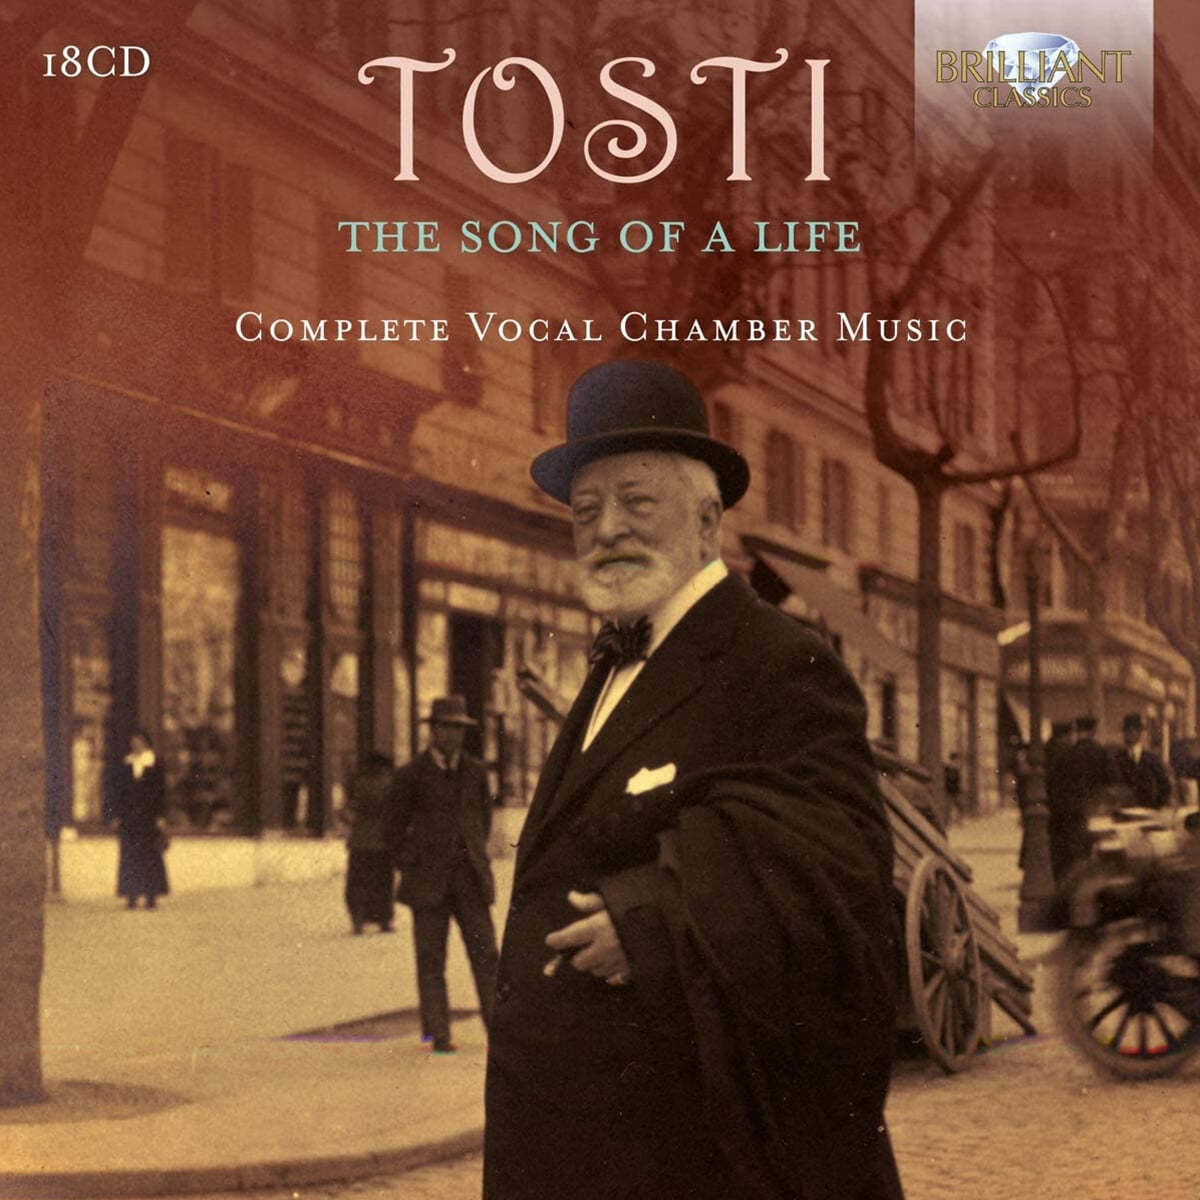 토스티: 가곡집 - 인생의 노래 (Francesco Paolo Tosti: The Song of a Life - Complete Vocal Chamber Music) 